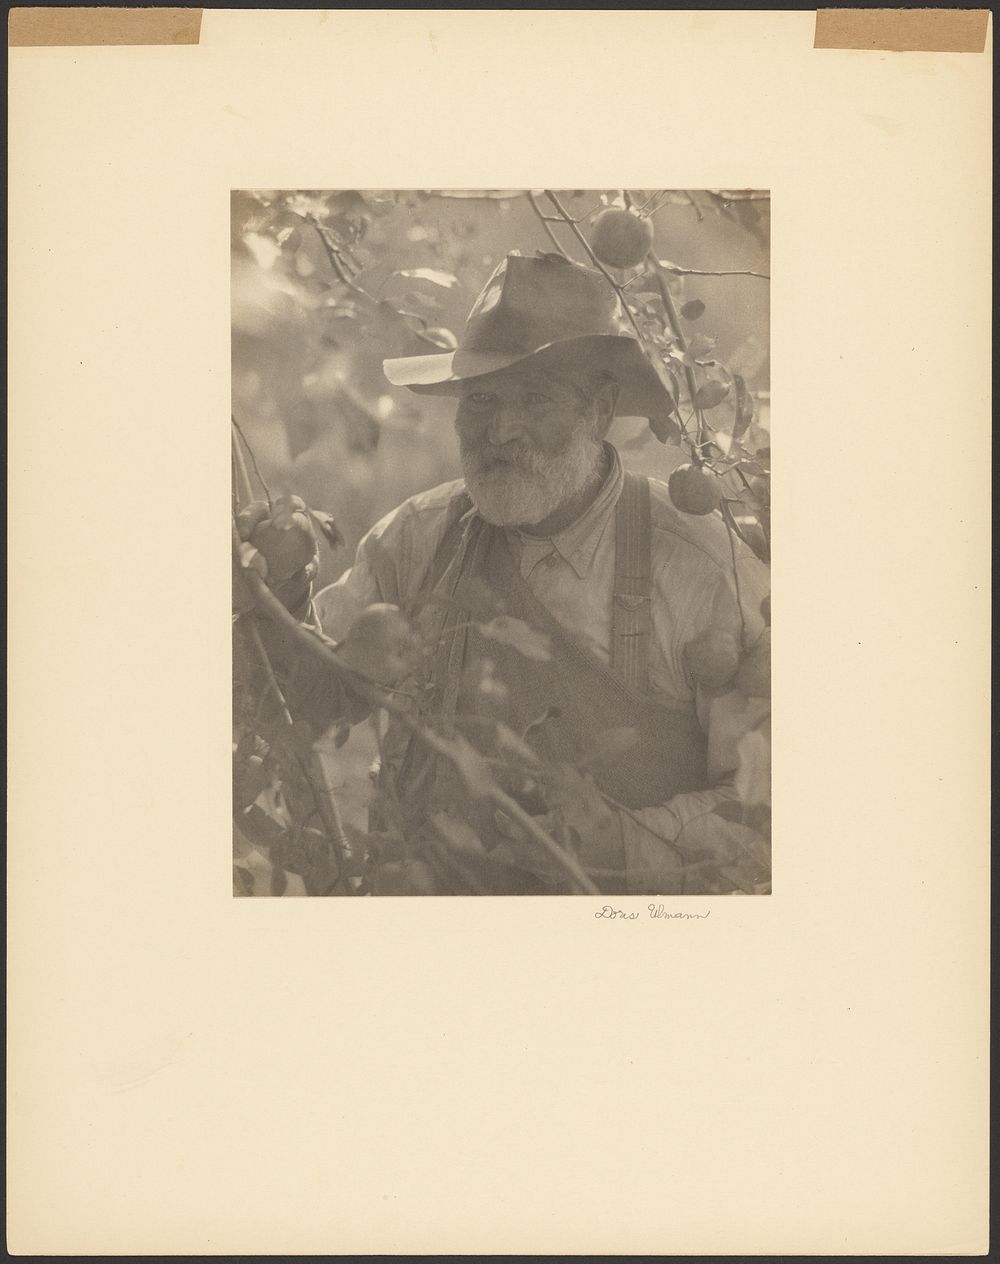 Bearded Man Wearing Hat in Apple Orchard by Doris Ulmann